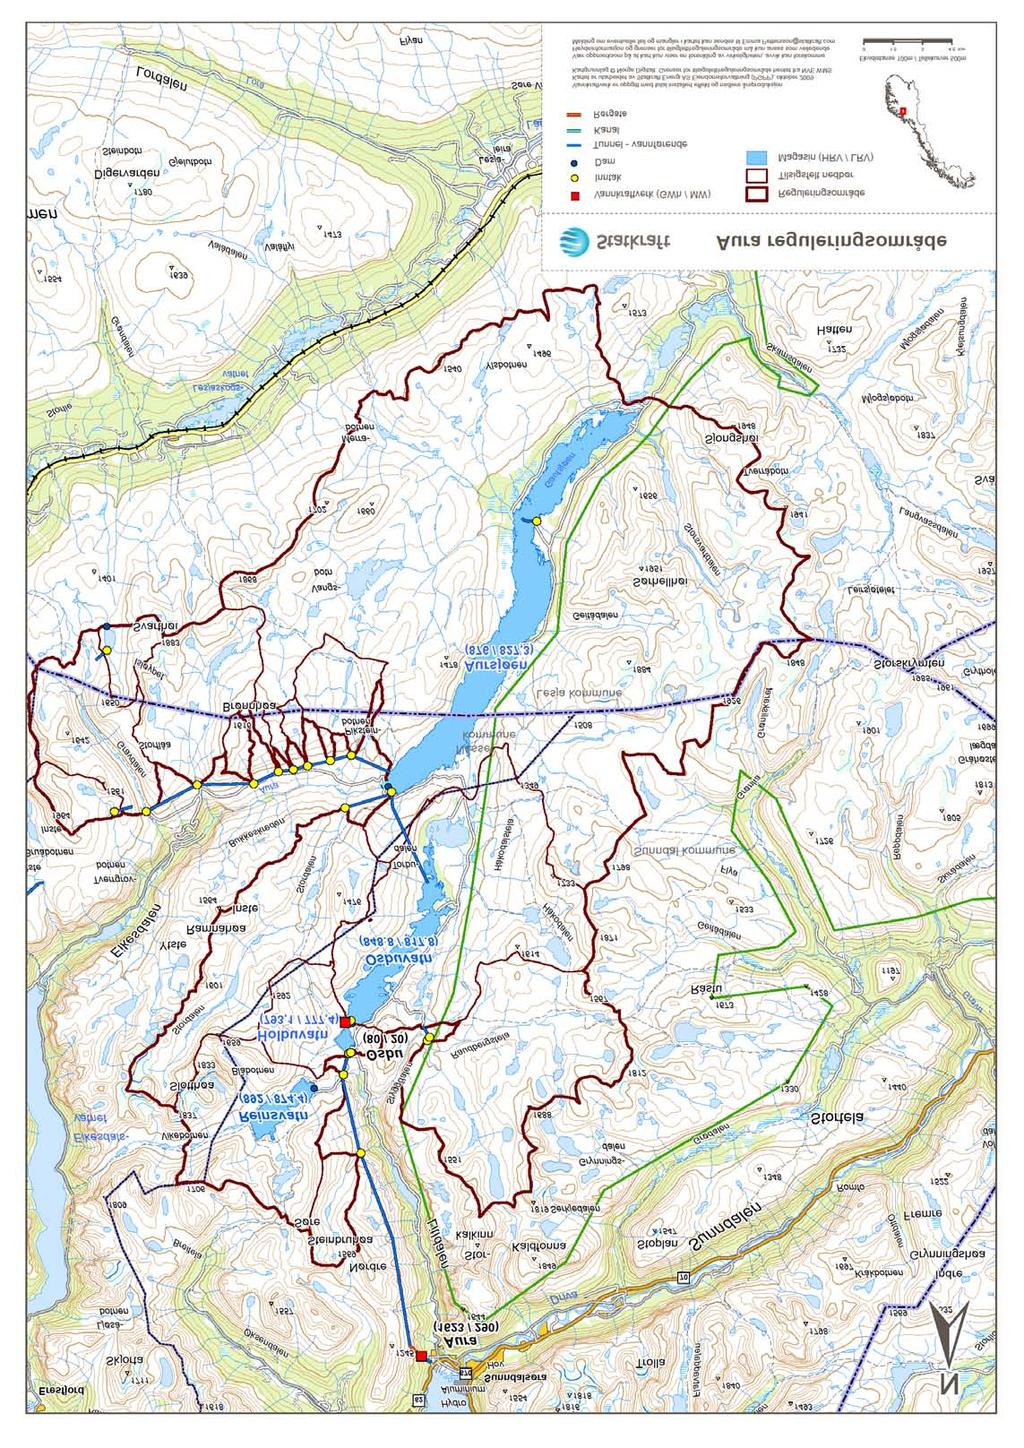 2 Områdebeskrivelse Auravassdraget har sine kilder i fjellområdet mellom Sunndalen og Lesja, og munner ut innerst i Eresfjorden, den østligste armen av Romsdalsfjorden.